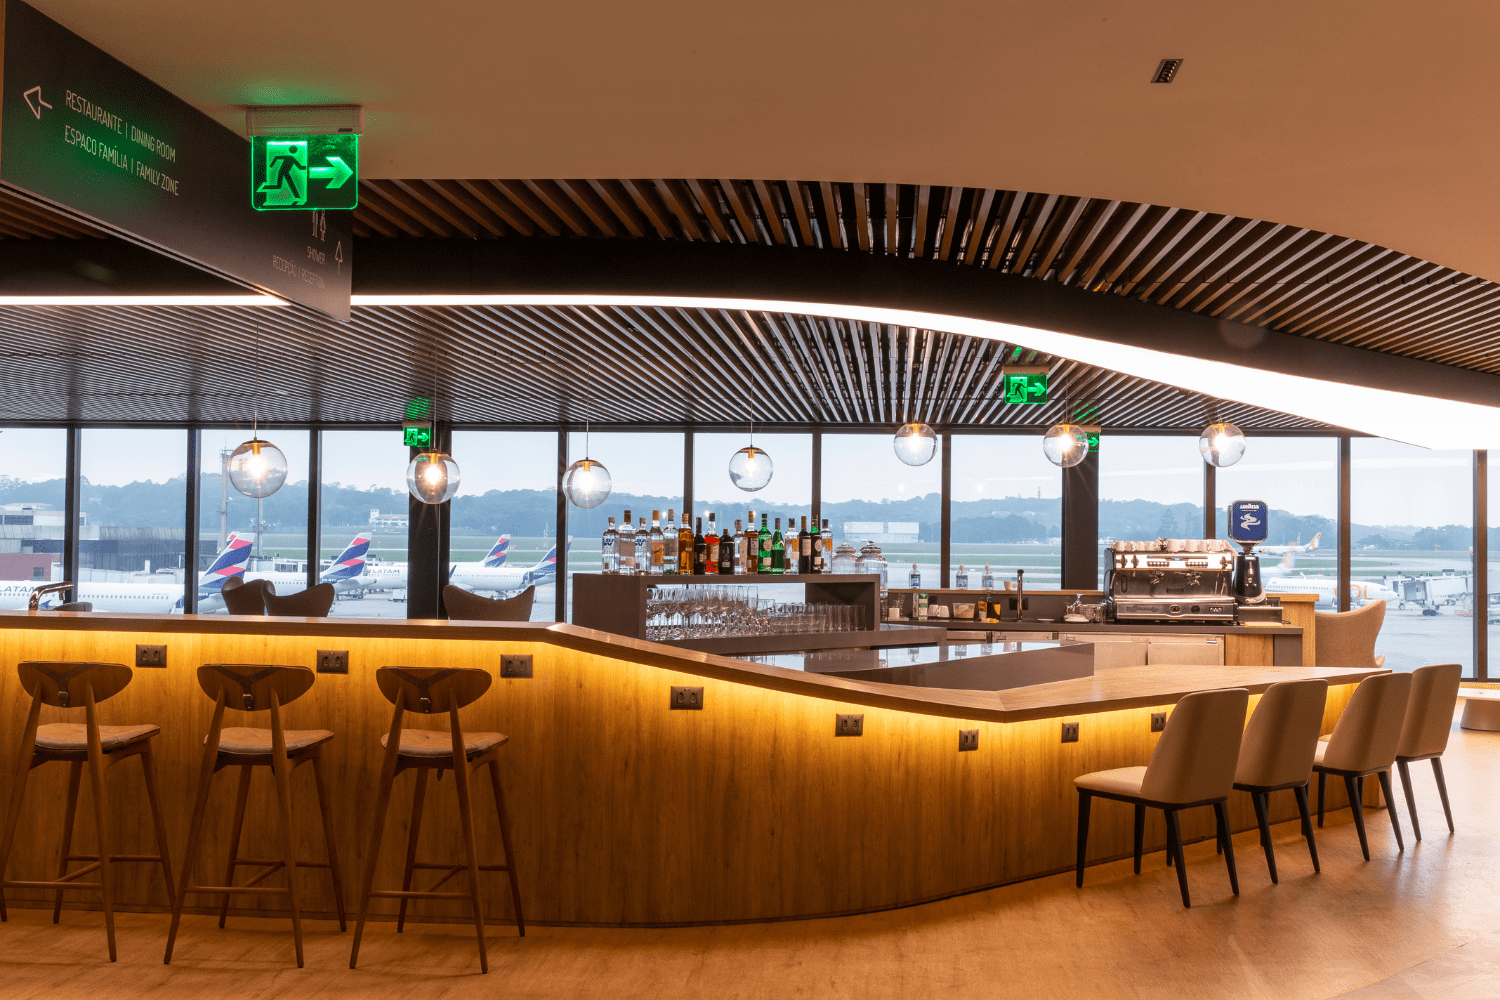 Melhor Sala Vip do Aeroporto de Guarulhos descubra qual o melhor lounge de 2024